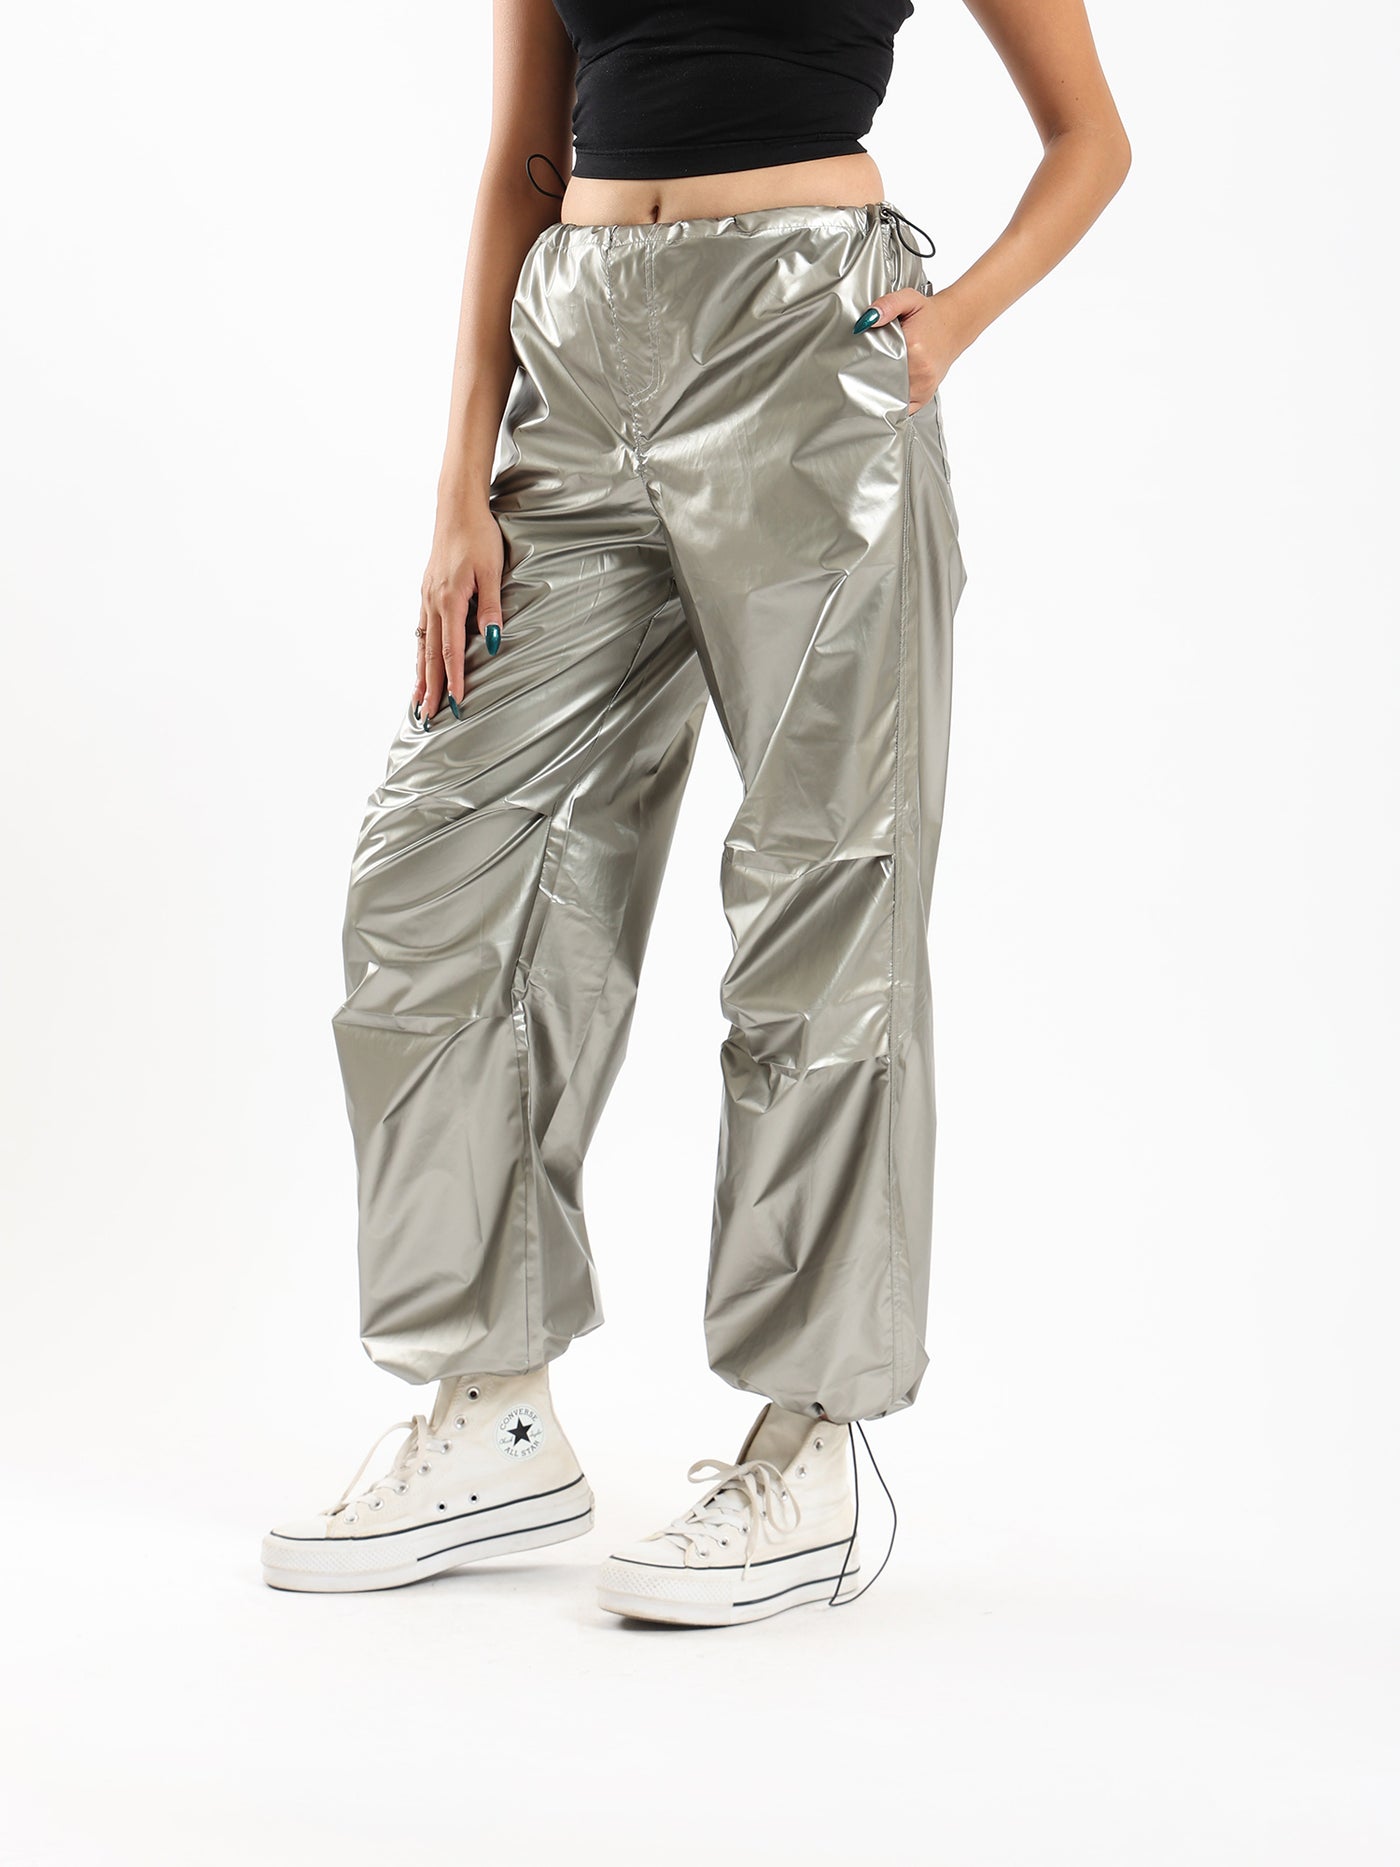 Parachute Pants - Shiny - With Pockets